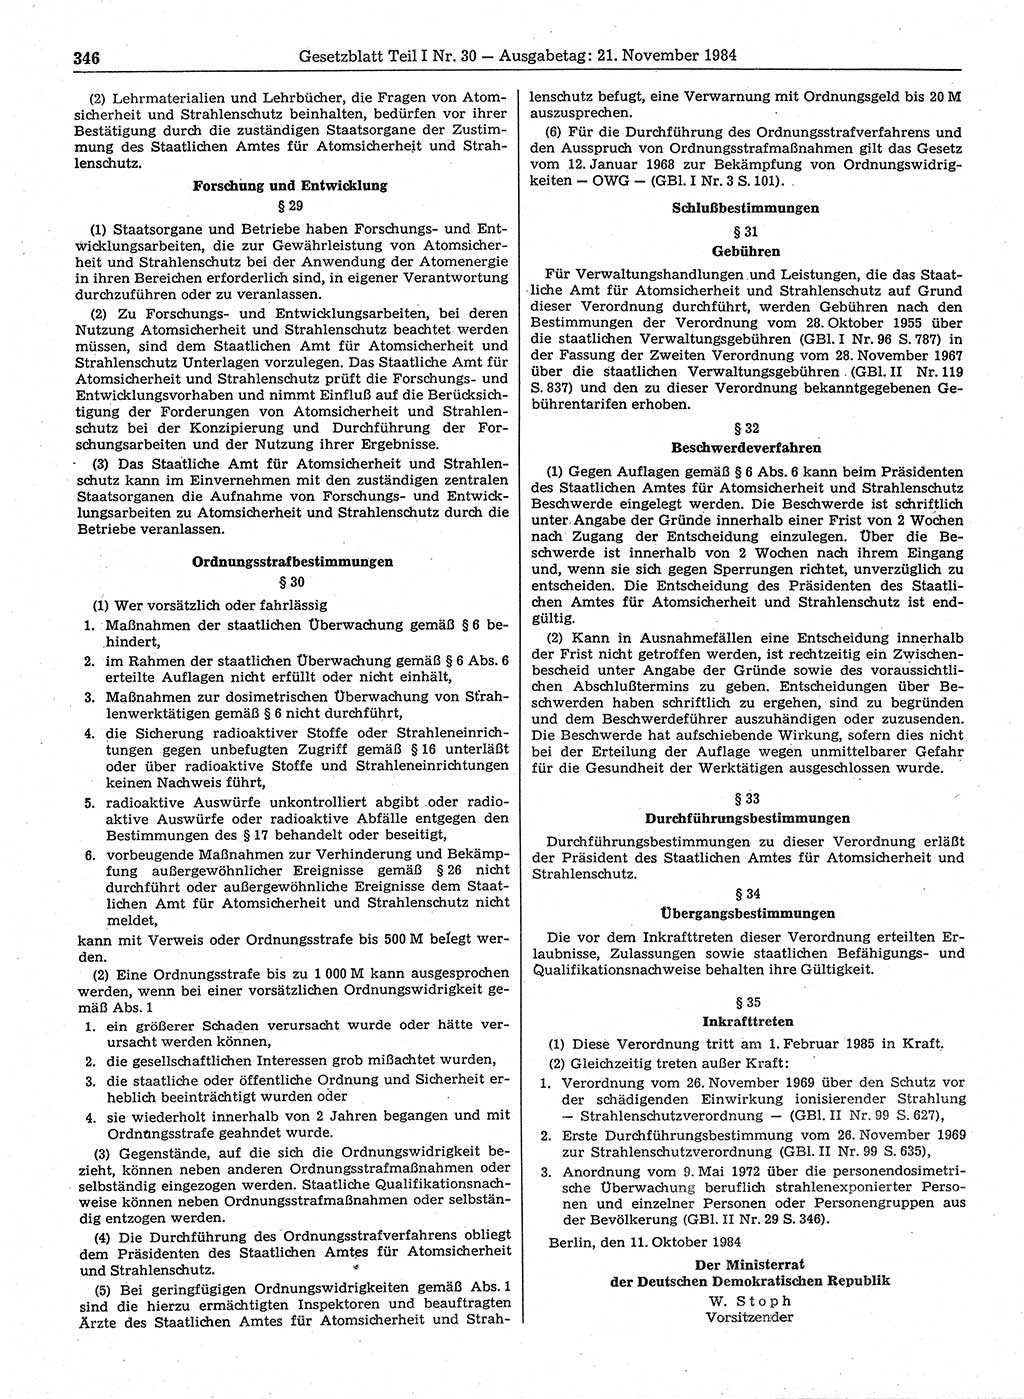 Gesetzblatt (GBl.) der Deutschen Demokratischen Republik (DDR) Teil Ⅰ 1984, Seite 346 (GBl. DDR Ⅰ 1984, S. 346)